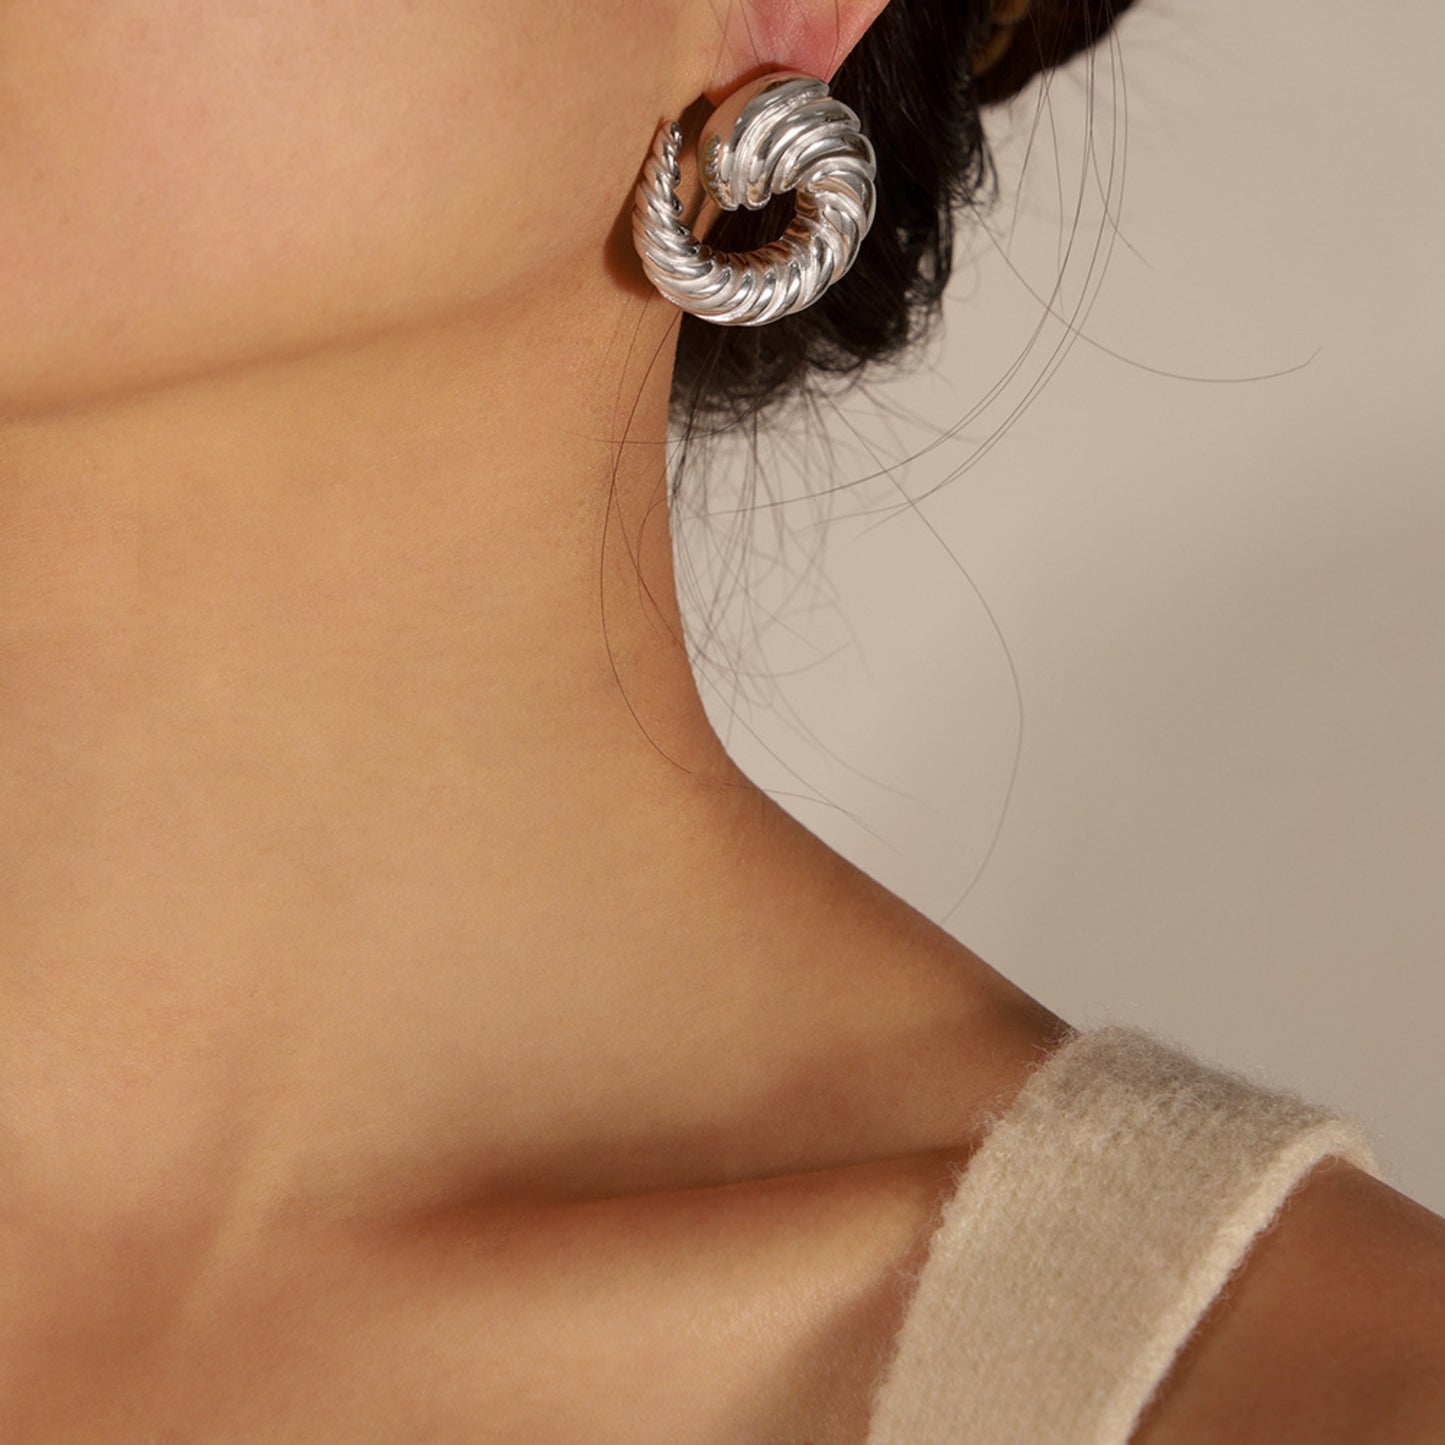 Titanium Steel Spiral Shape Stud Earrings